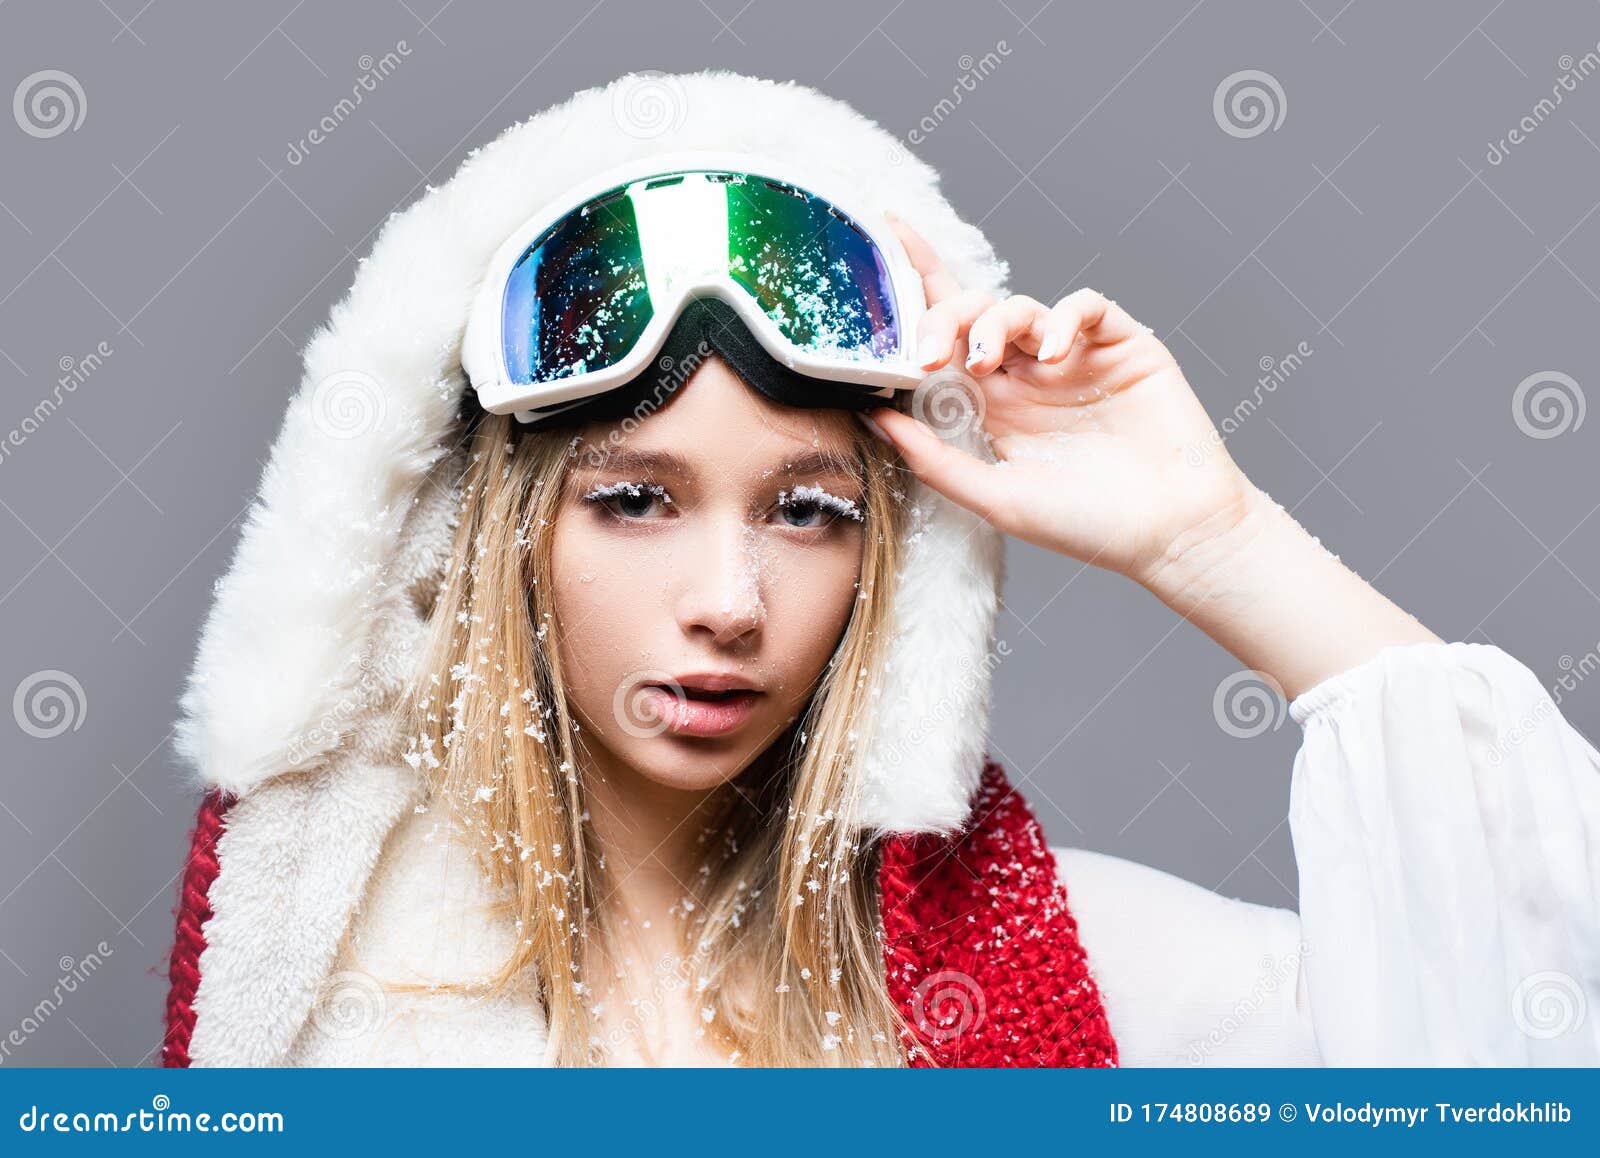 Copos De Nieve En Las Pestañas. Snowboard Chica En Gafas De Seguridad.  Invierno. Retrato De Primer Plano De Niña Esquiadora Sonrie Imagen de  archivo - Imagen de adorable, hospitalidad: 174808689